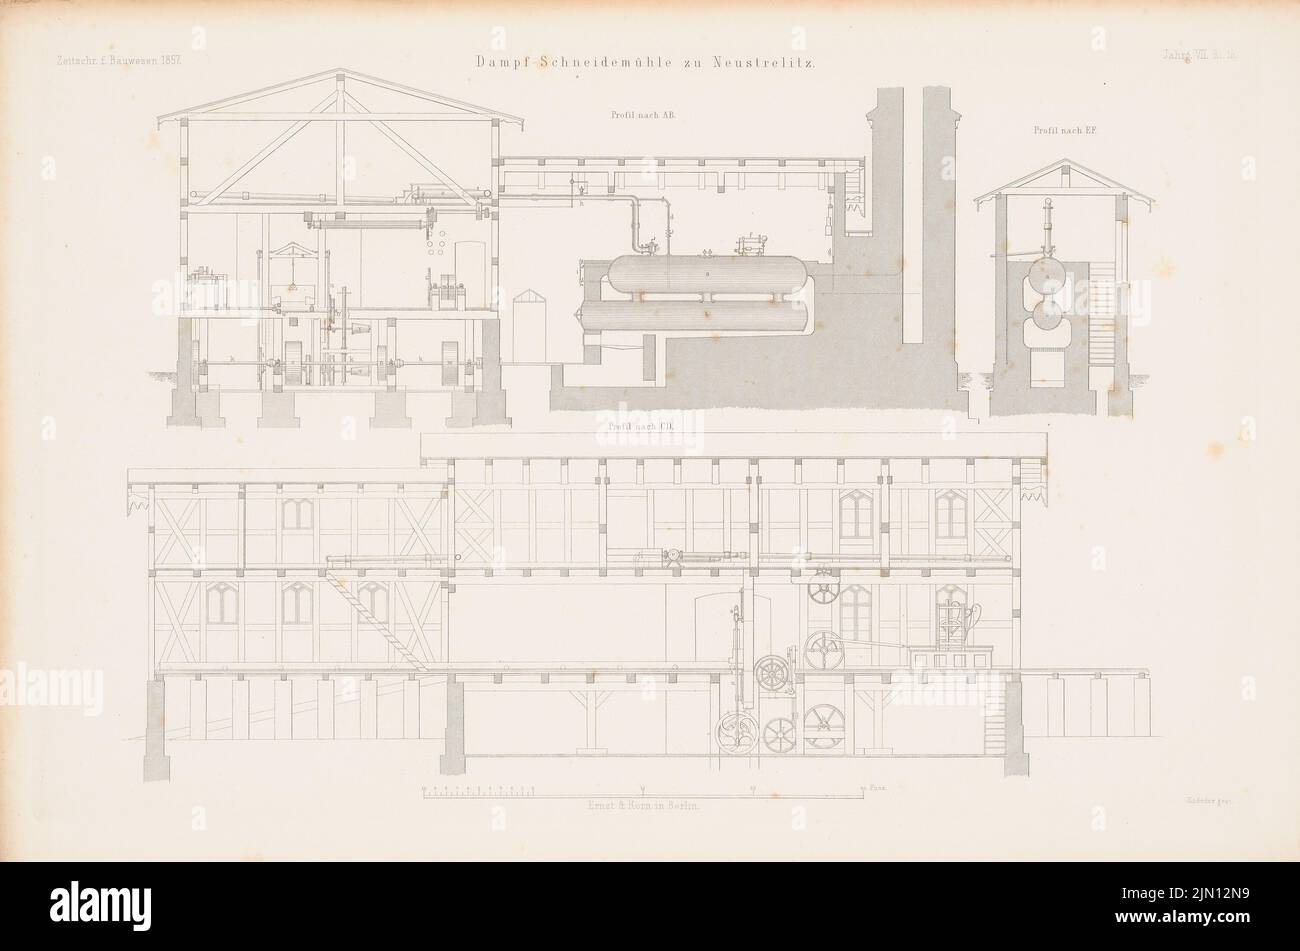 N.N., Steam Schneidemühle, Neustrelitz. (From: Atlas to the magazine for Building, ed. V. G. Erbkam, Jg. 7, 1857.) (1857-1857): Cut A B, Cutting C D, Cutting E F. Stich on paper, 29.6 x 44, 6 cm (including scan edges) N.N. : Dampfschneidemühle, Neustrelitz. (Aus: Atlas zur Zeitschrift für Bauwesen, hrsg. v. G. Erbkam, Jg. 7, 1857) Stock Photo